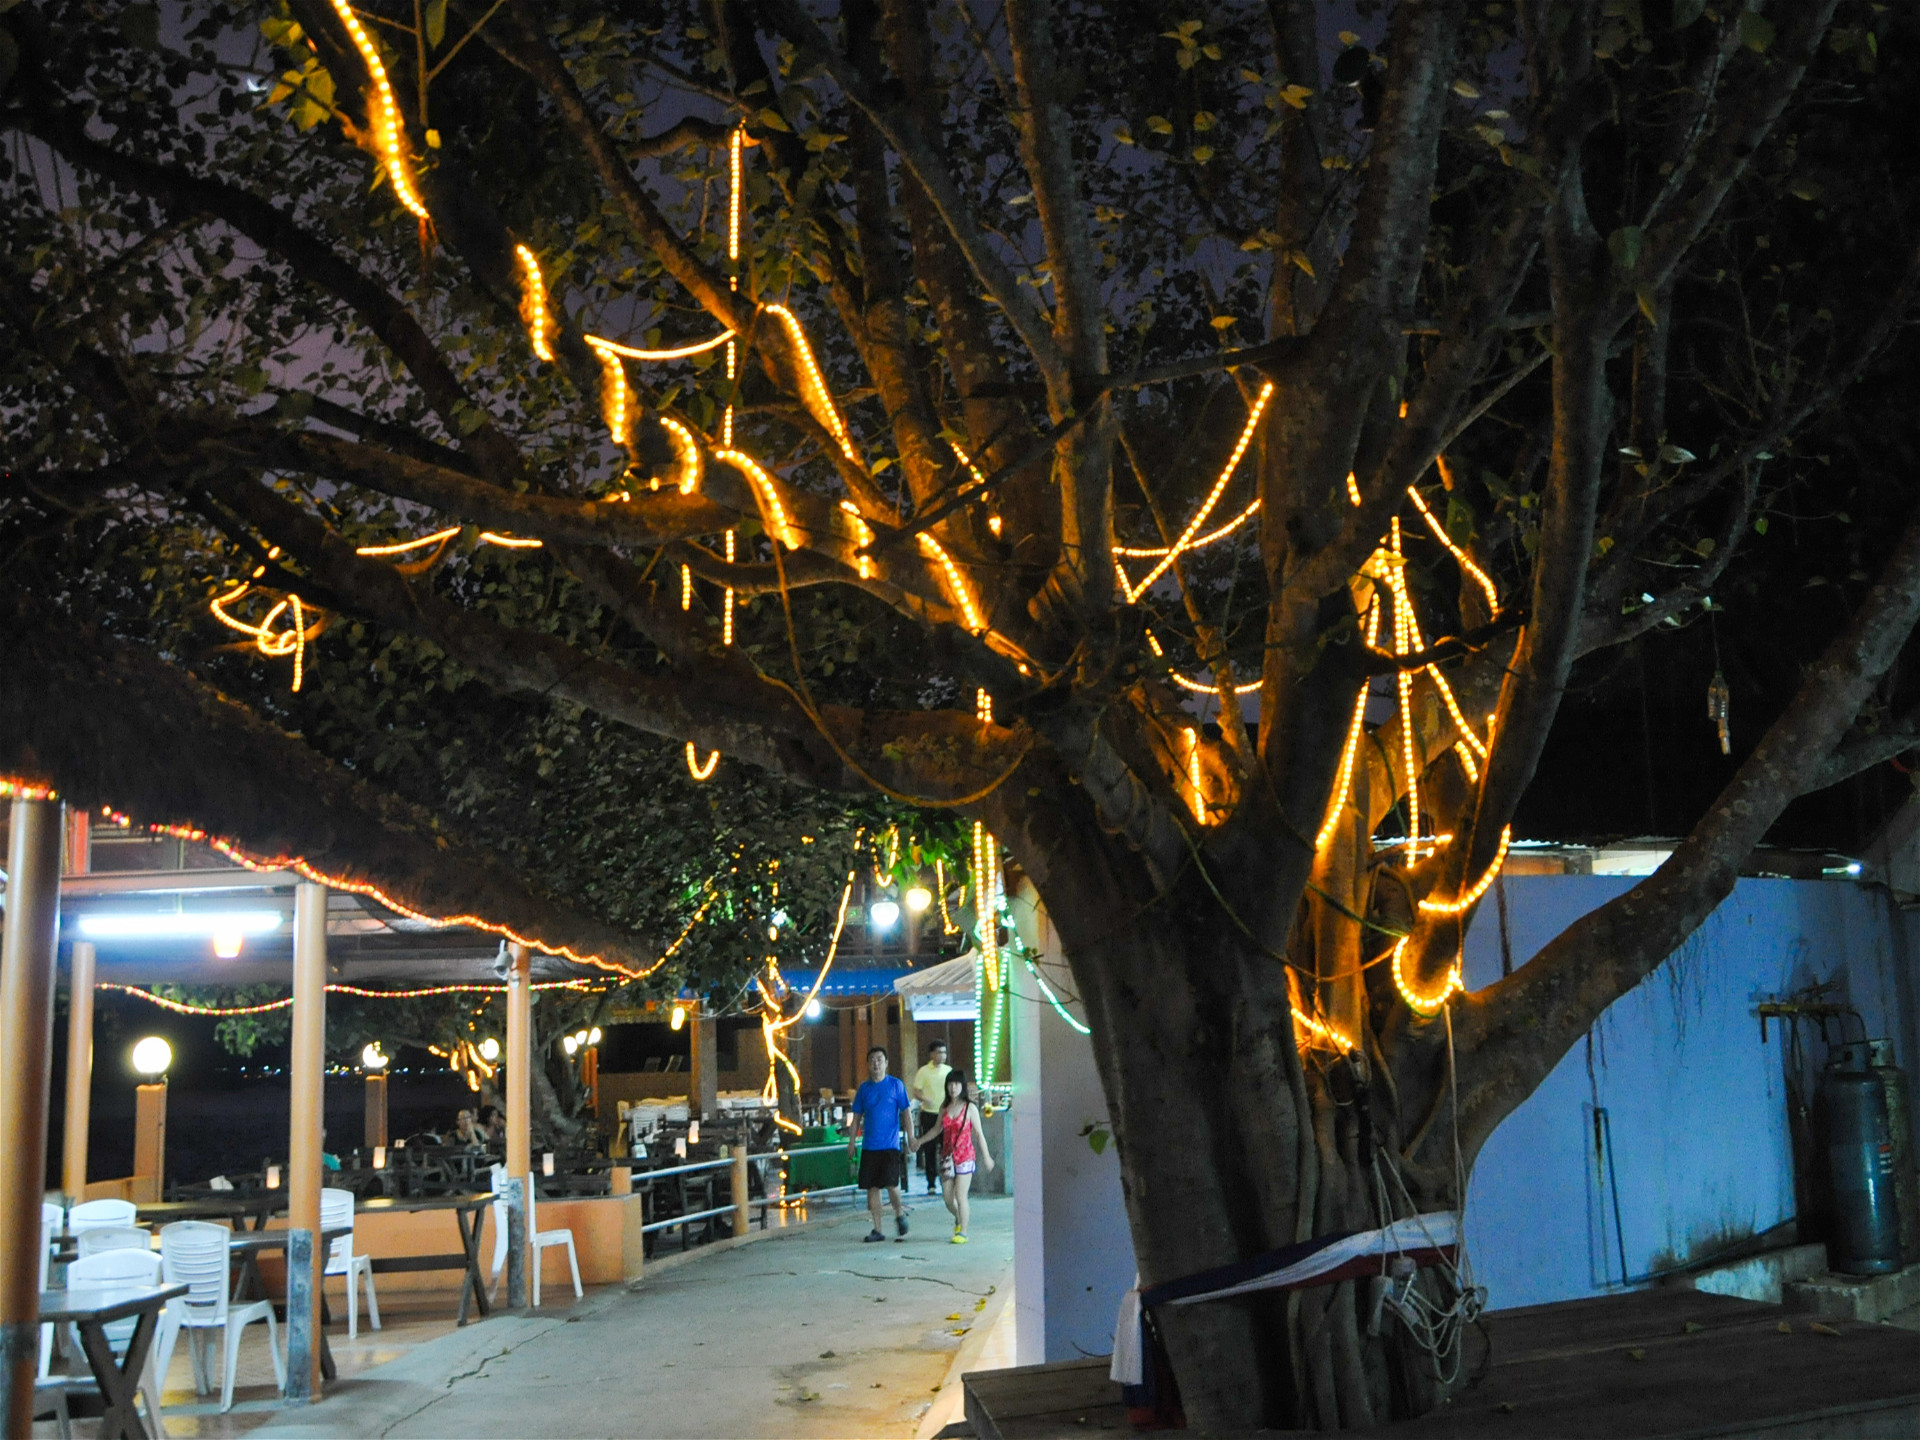 Ресторан и дерево с подсветкой